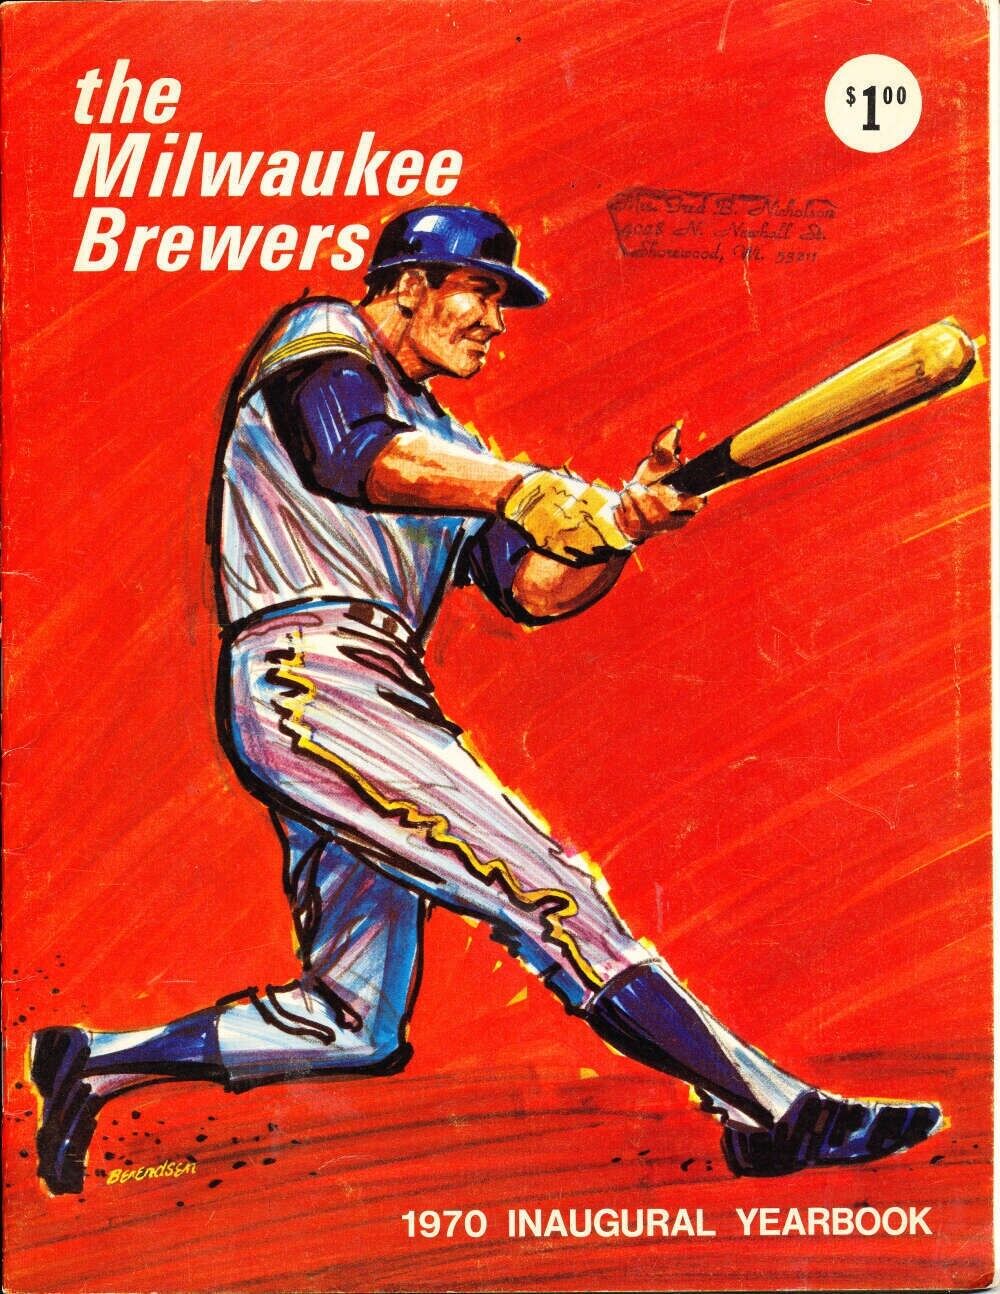 Vintage 1970 Milwaukee Brewers yearbook